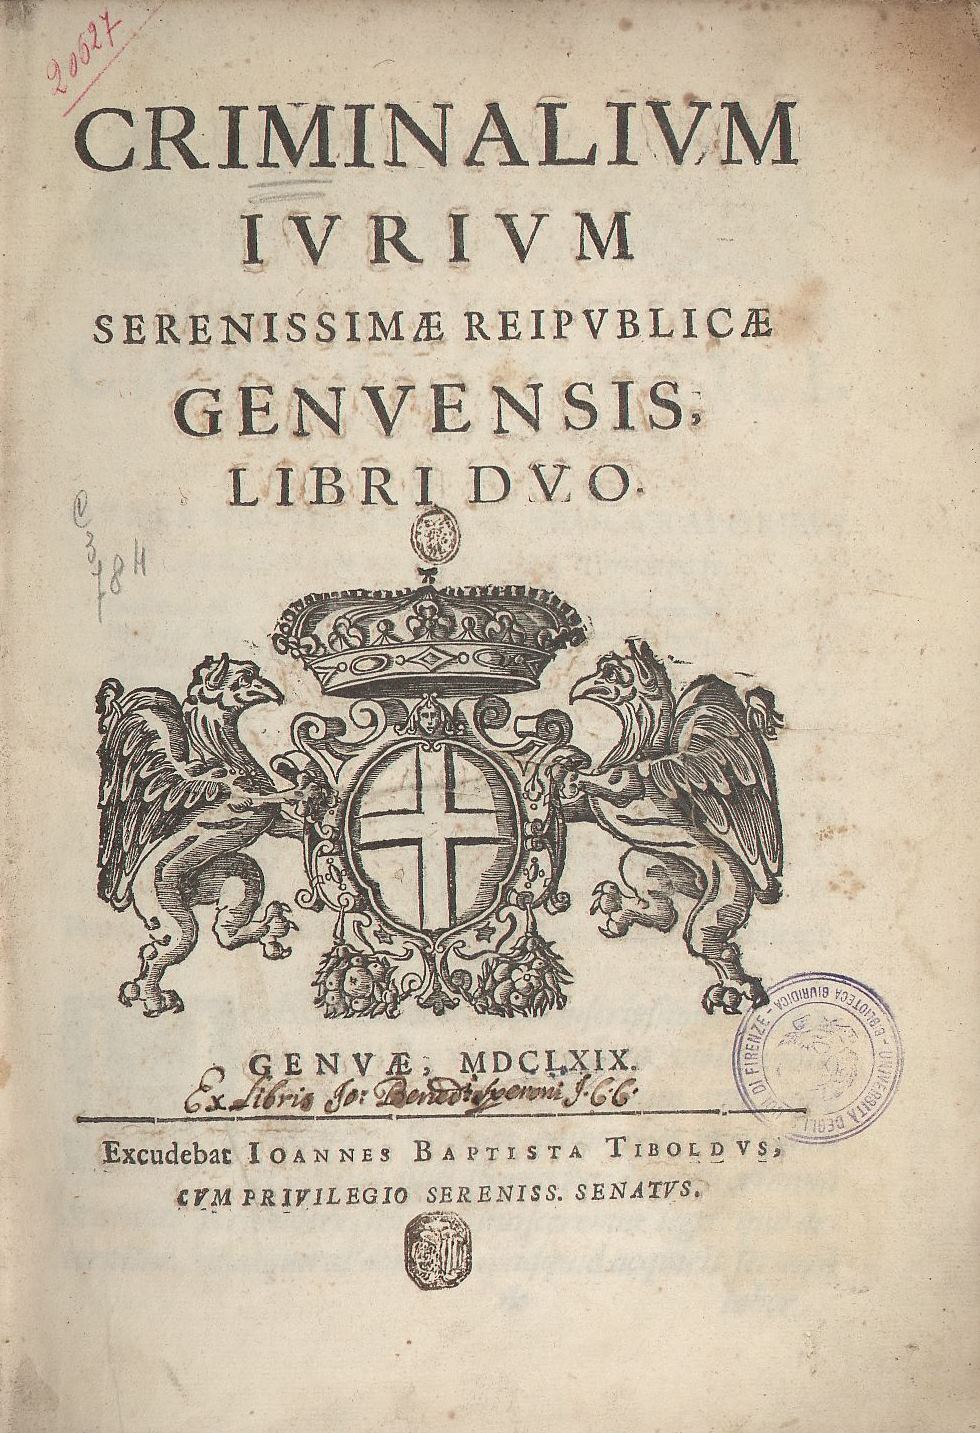 Criminalium iurium serenissimae reipublicae Genuensis 